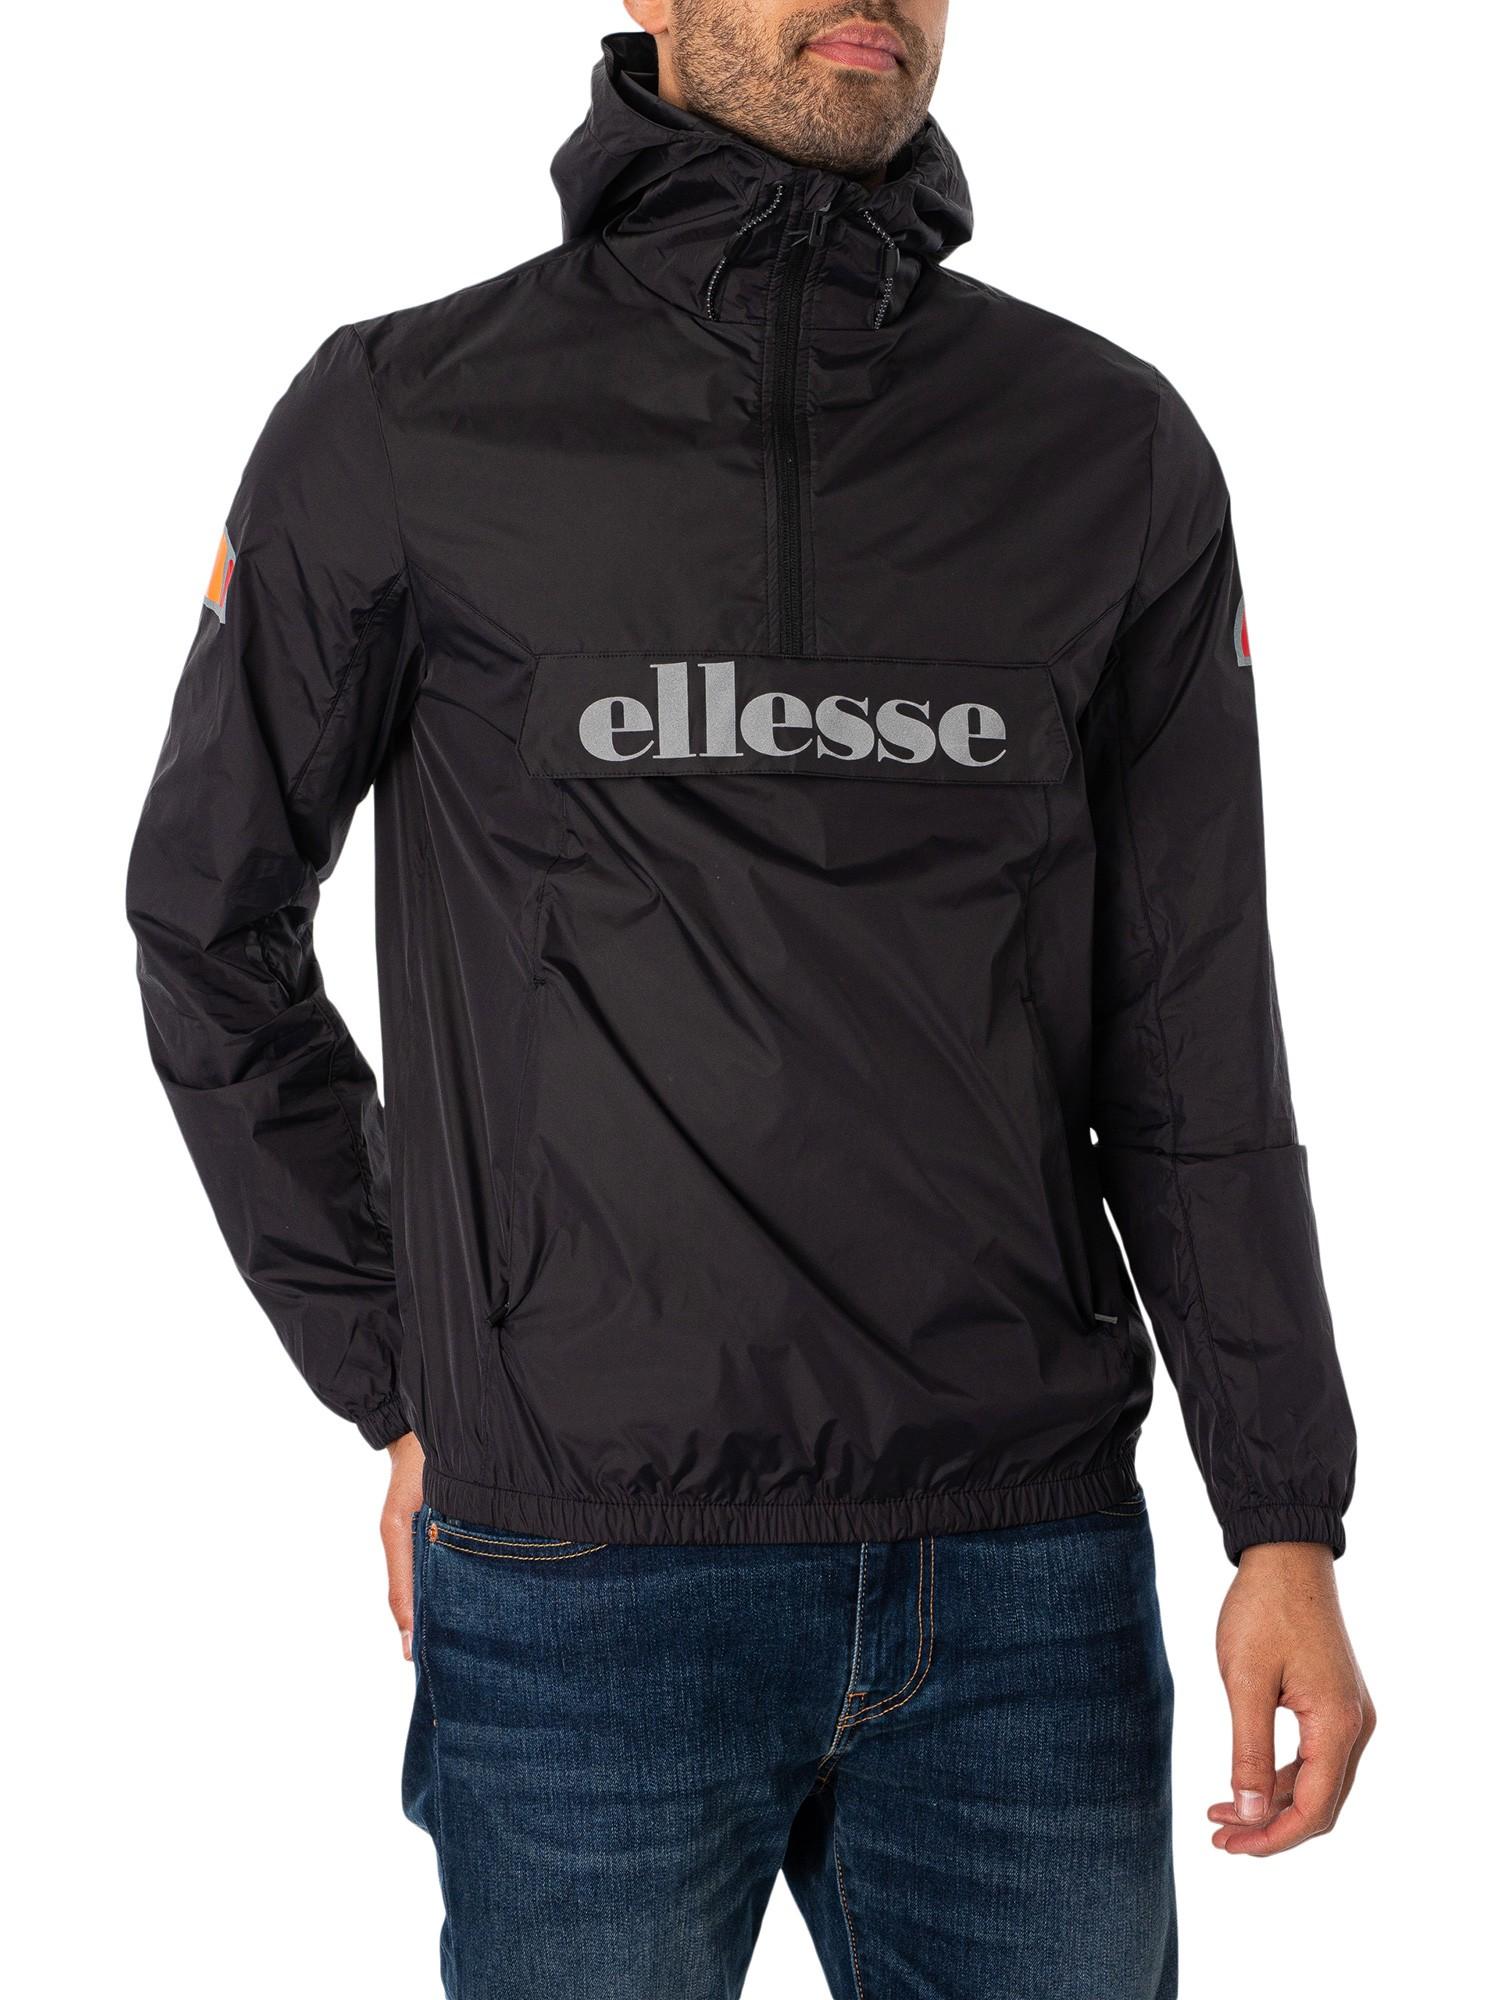 Ellesse Acera Pullover Jacket in Black for Men | Lyst